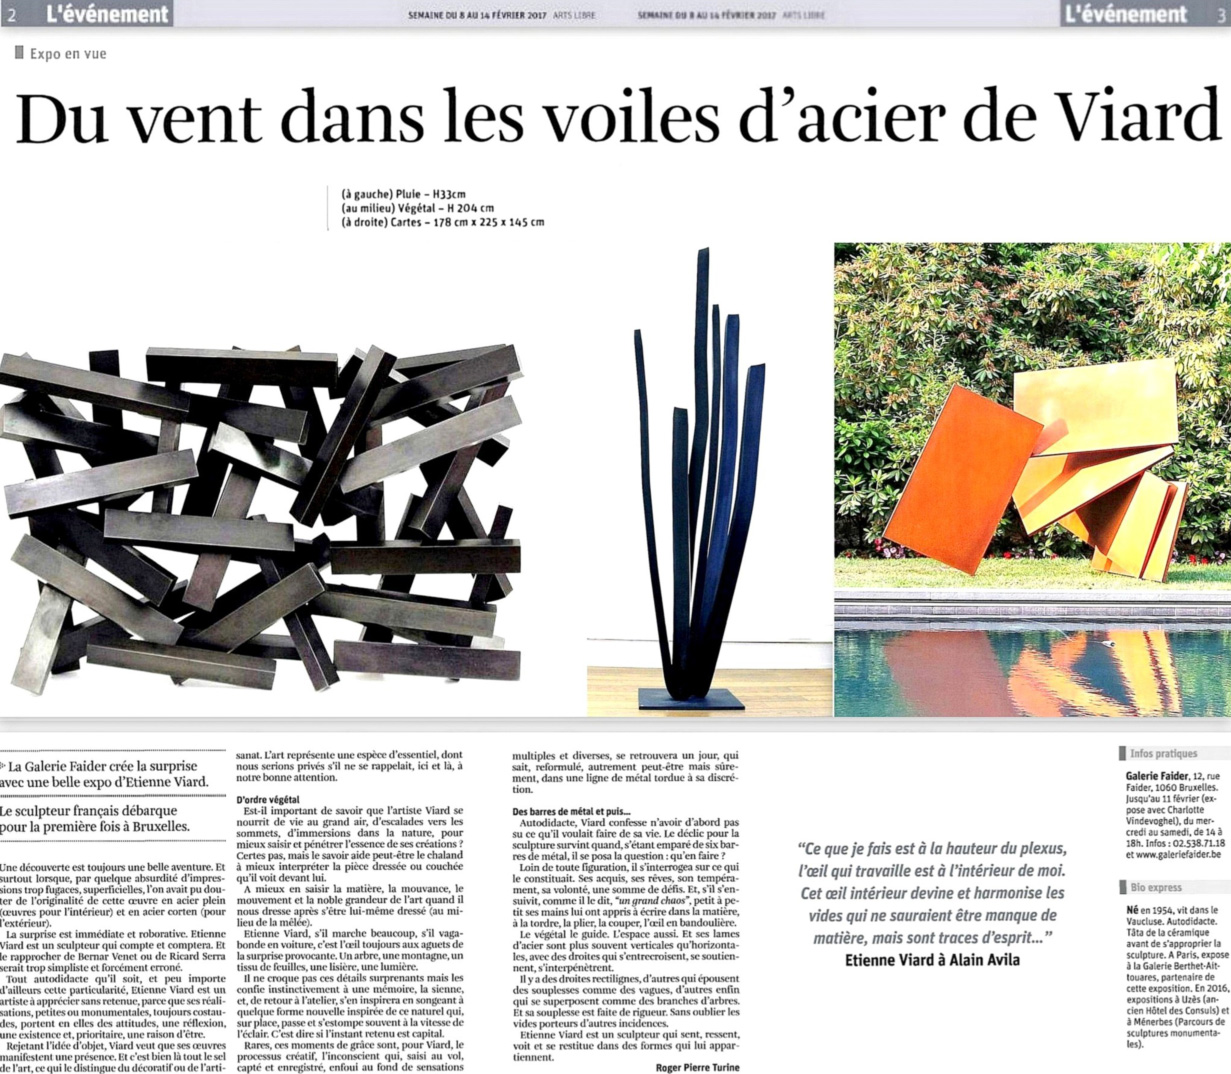 article_La_libre_Belgique_Etienne_Viard